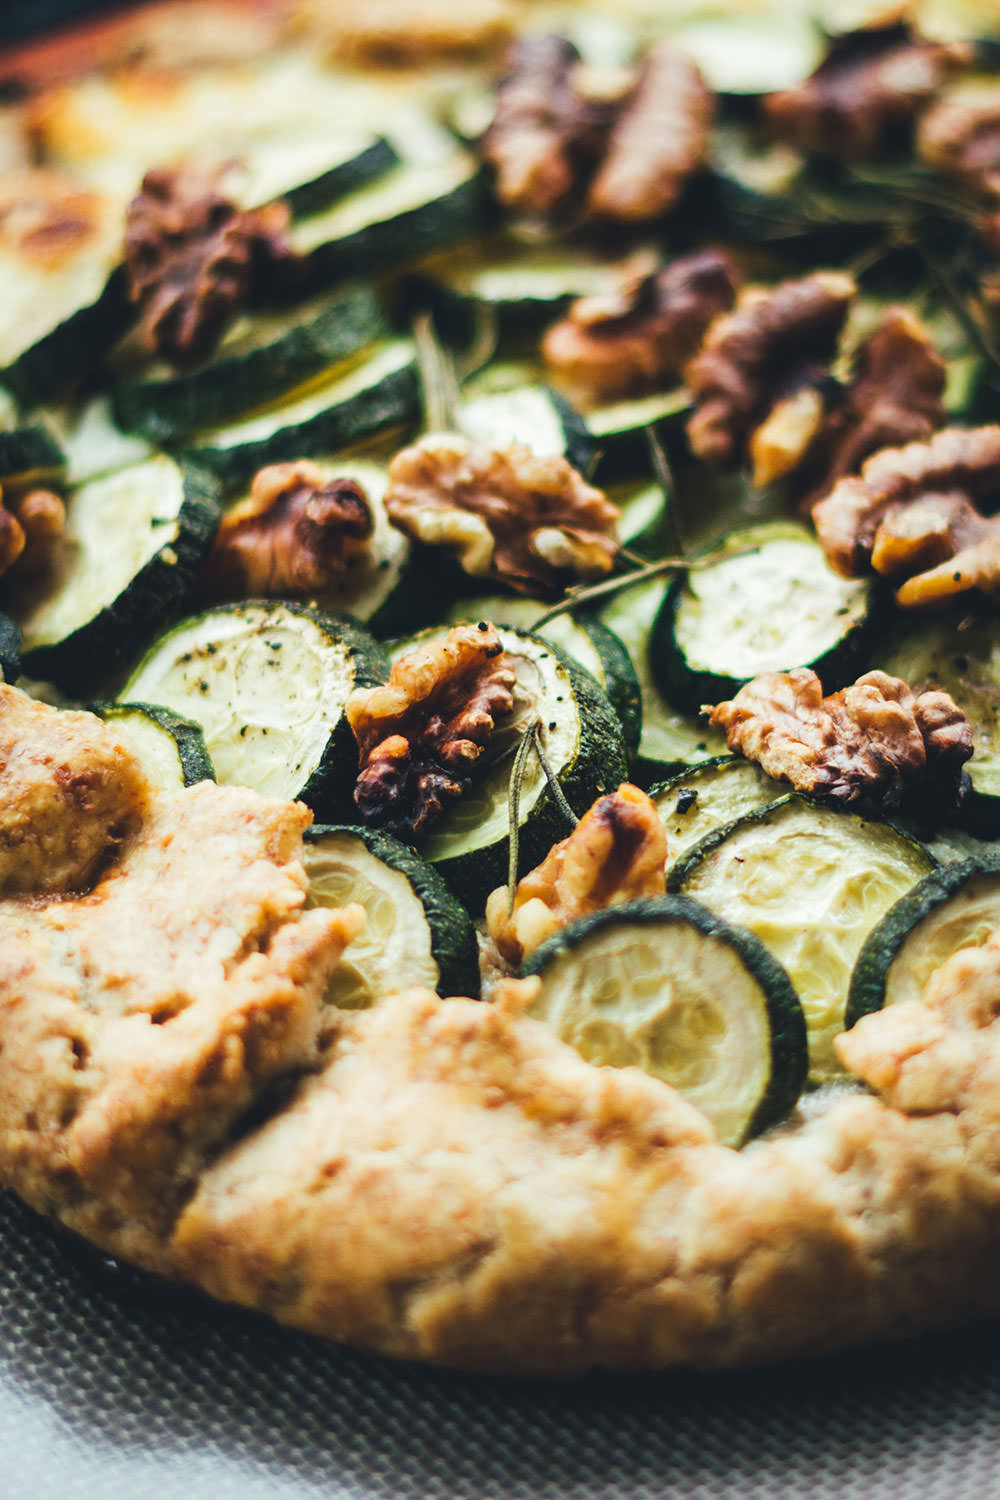 Rezept für spätsommerliche Zucchini-Galette | knusprige Tarte mit Zucchini, Ricotta, Büffelmozzarella und Walnüssen | moeyskitchen.com #galette #tarte #zucchini #courgette #büffelmozzarella #ricotta #vegetarisch #veggie #abendessen #dinner #feierabendküche #sommerküche #rezepte #foodblogger